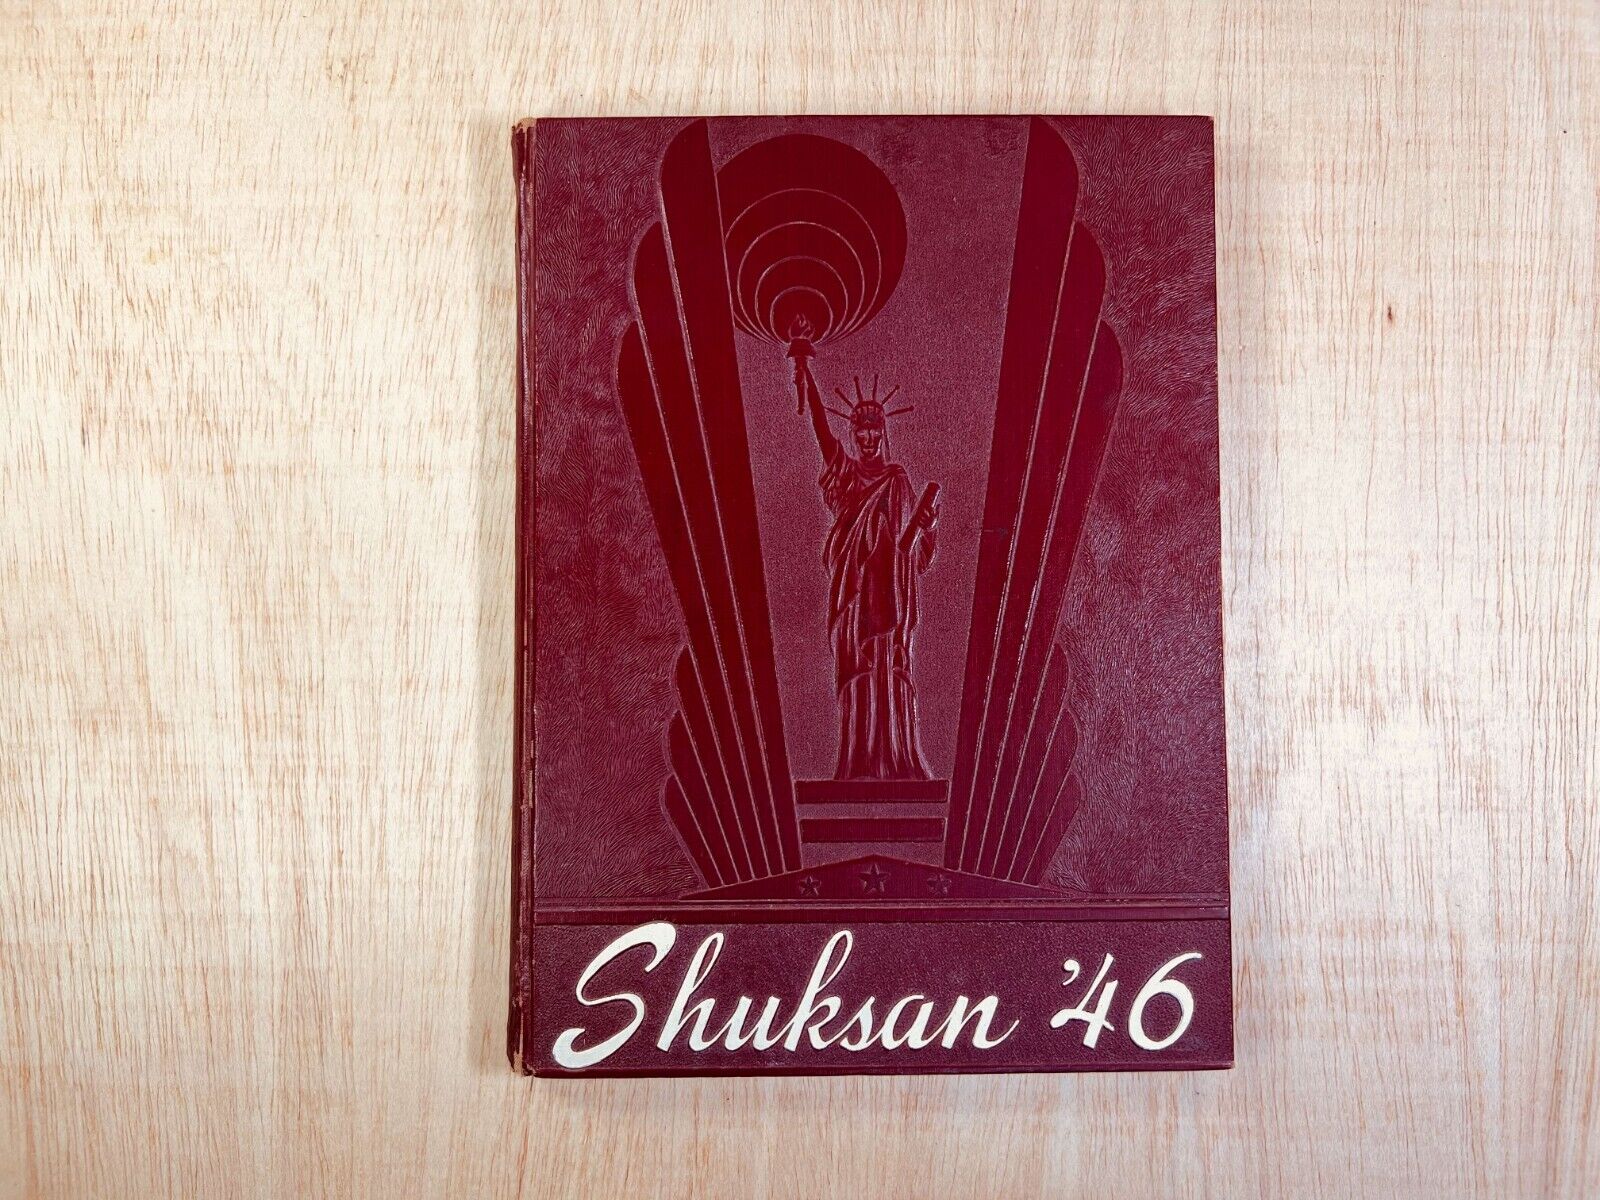 Yearbook of Bellingham High School. The 1946 Shuksan. Bellingham, Washington